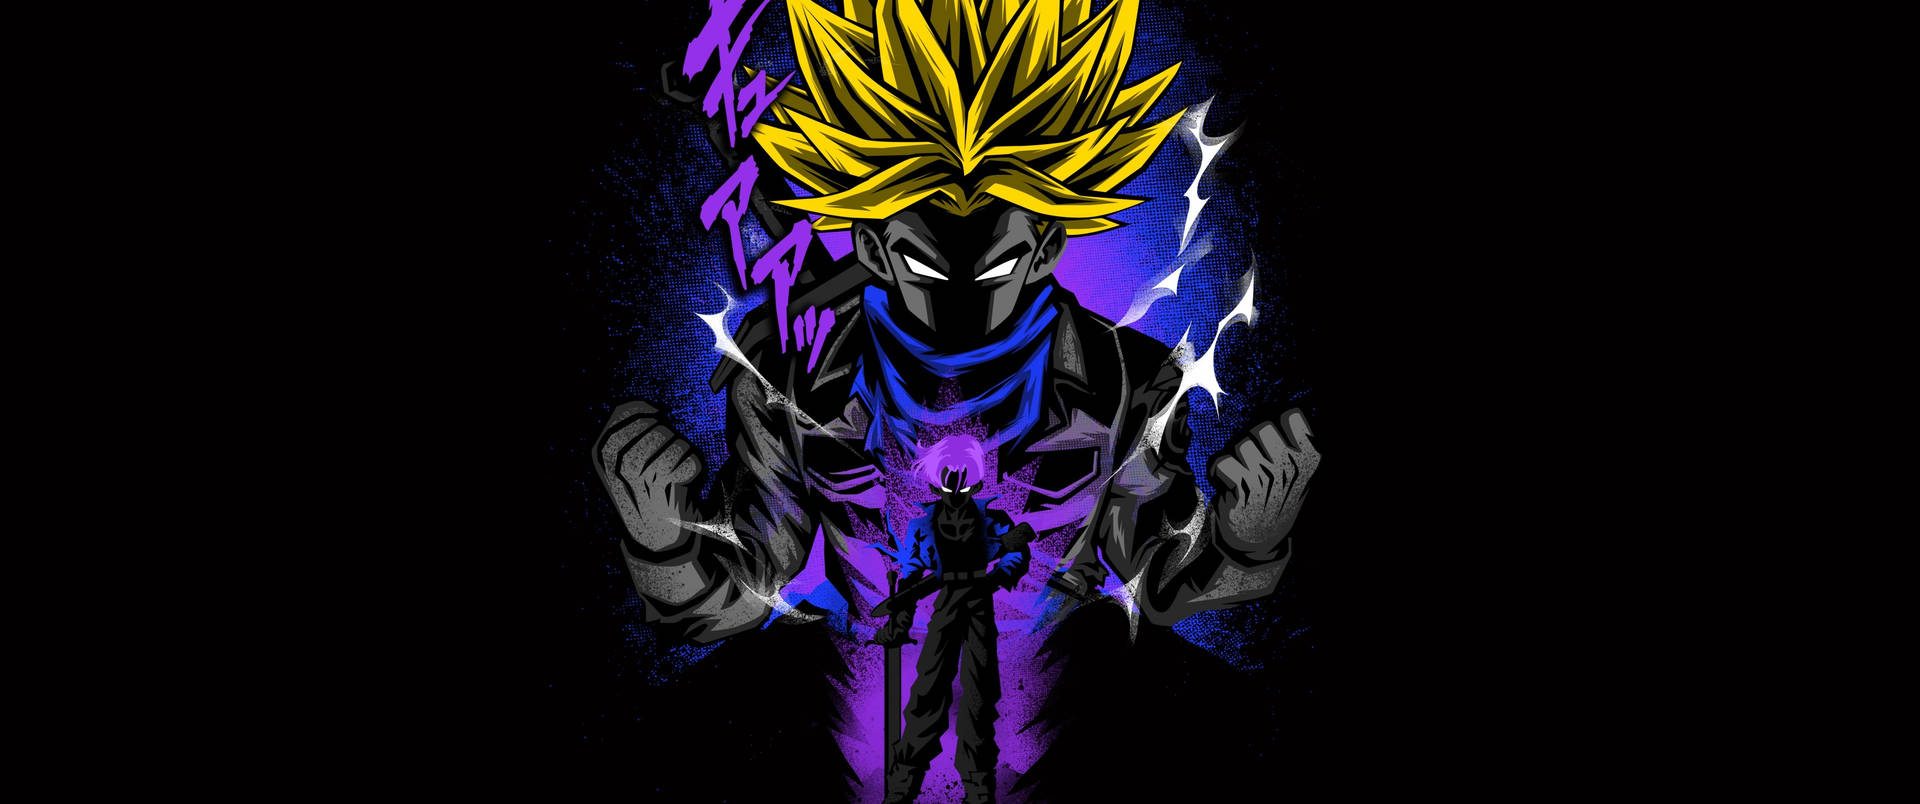 Goku4k Ultra Hd Super Saiyan Purple Aura - Goku 4k Ultra Hd Super Saiyan Lila Aura. Wallpaper